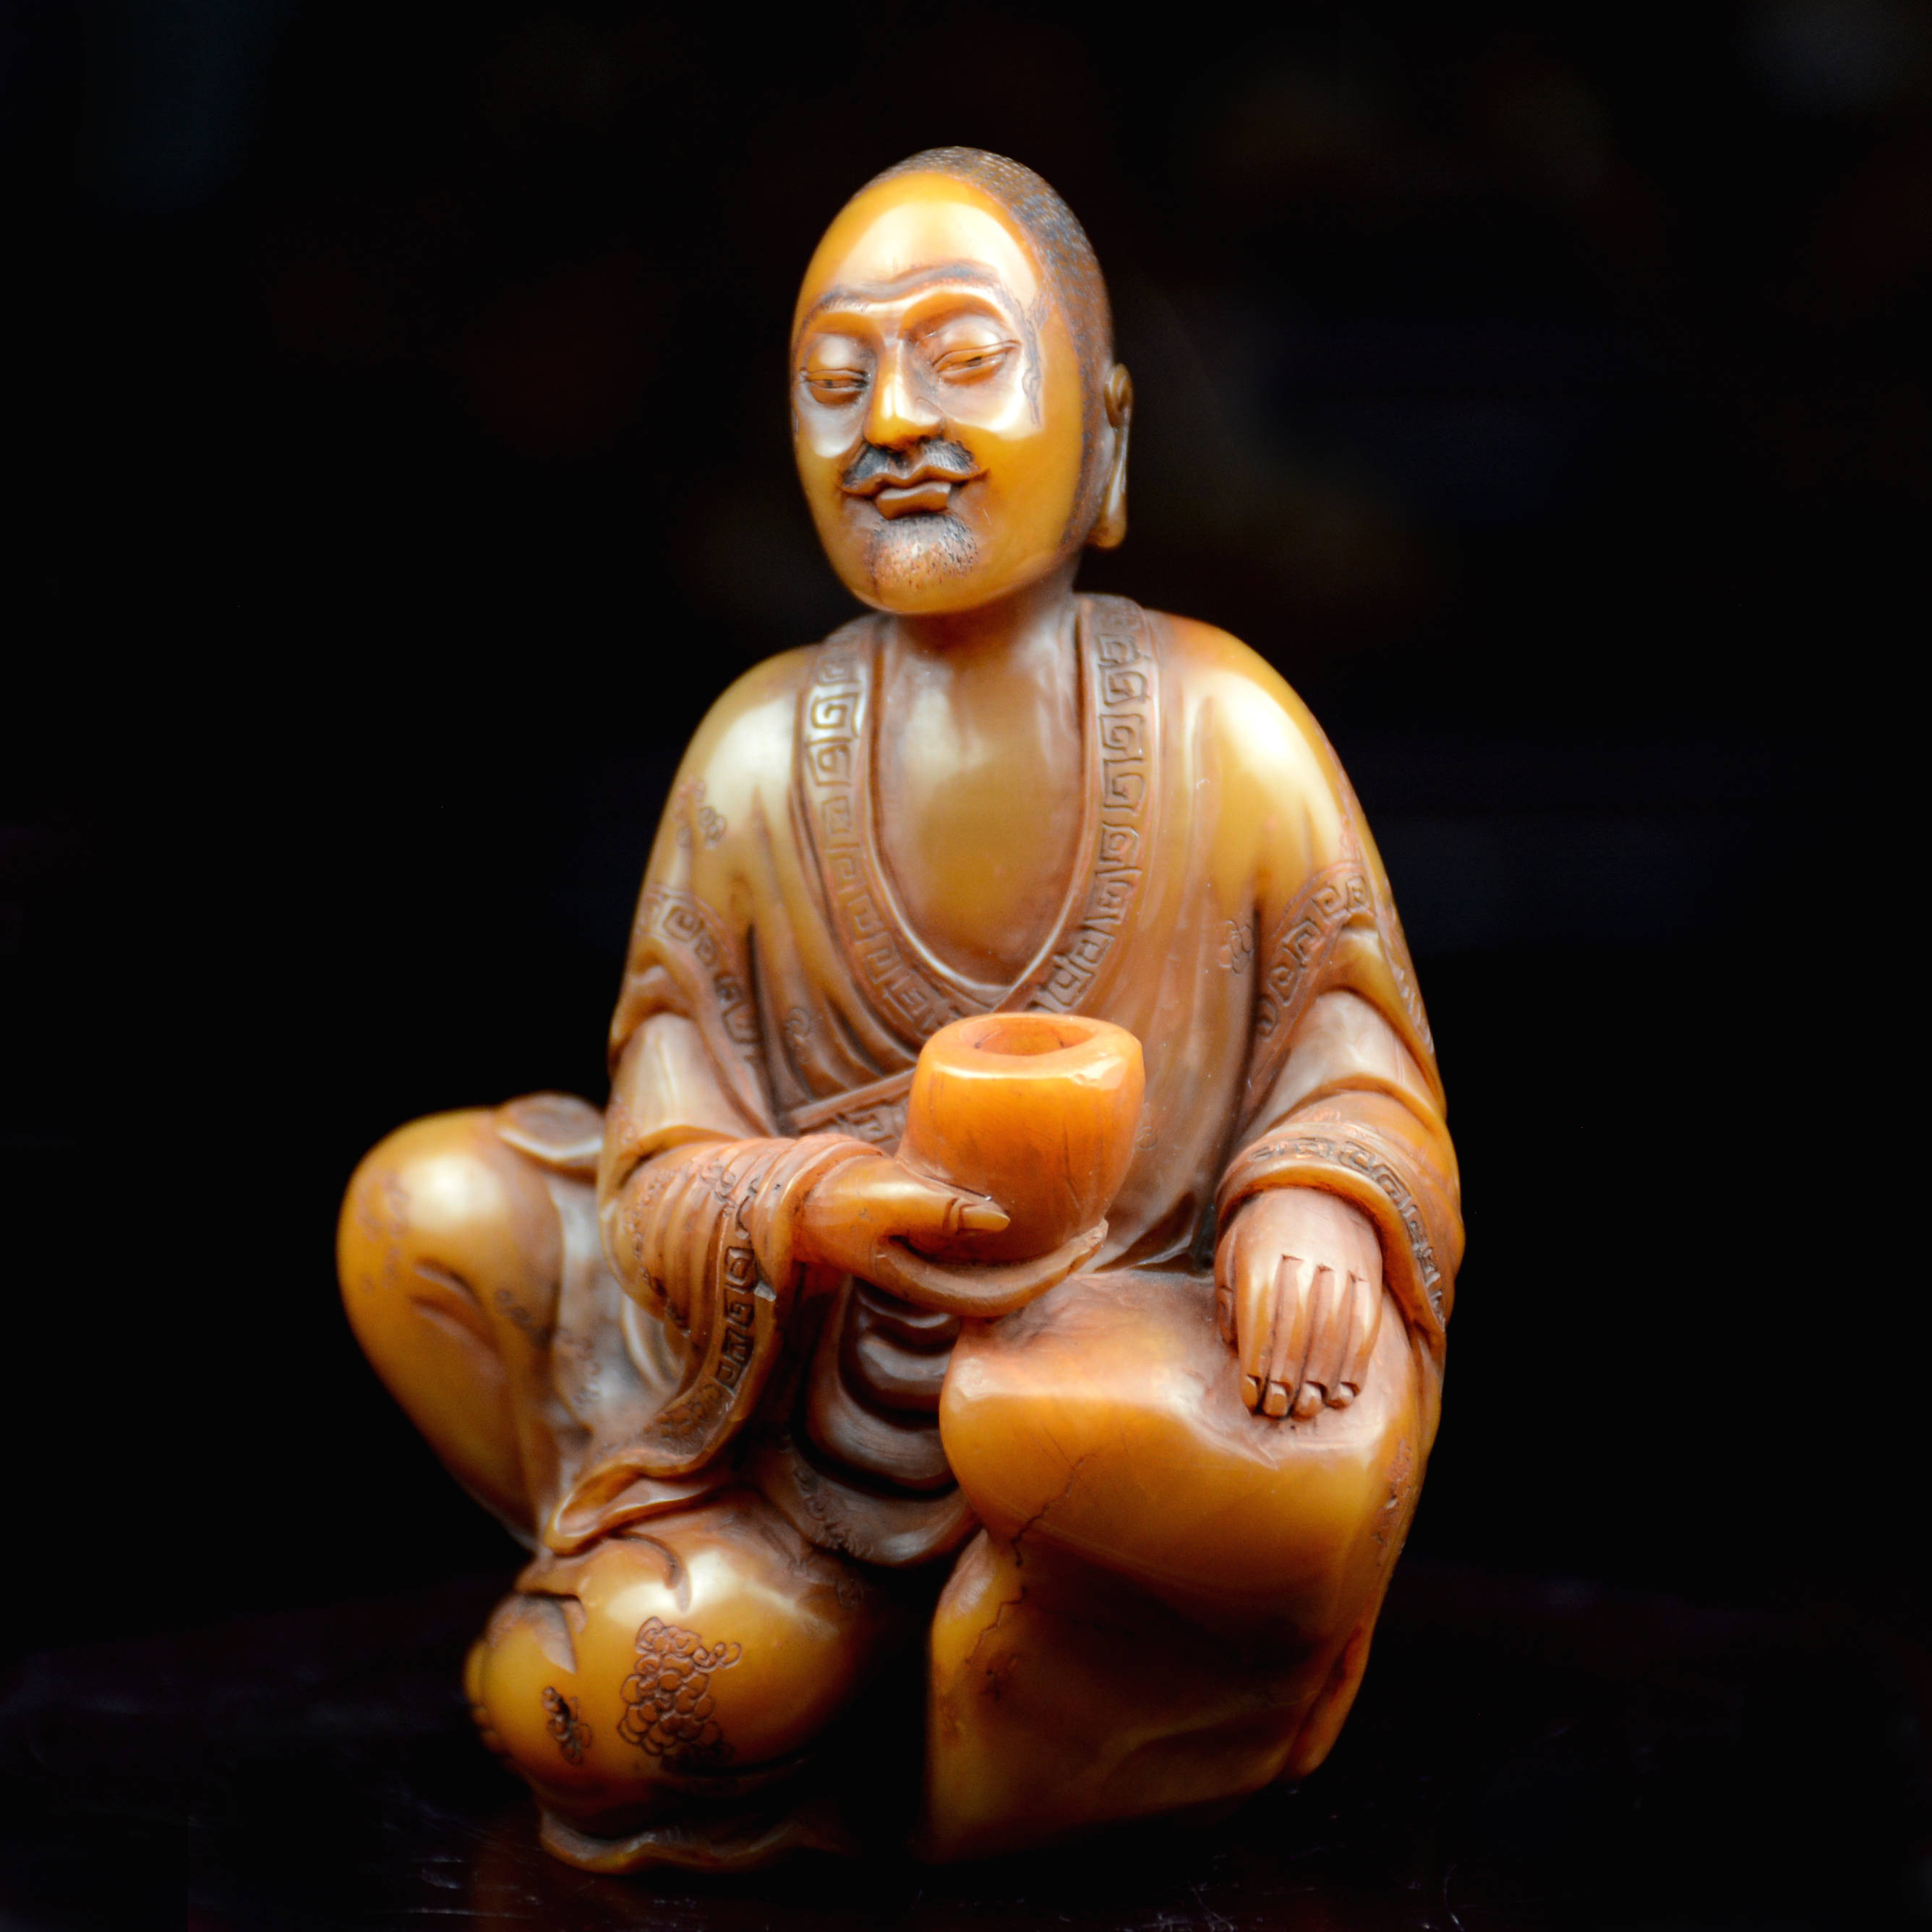 寿山石收藏家黄坚全球首次展出清代早期寿山石雕作品《十八罗汉》_手机 